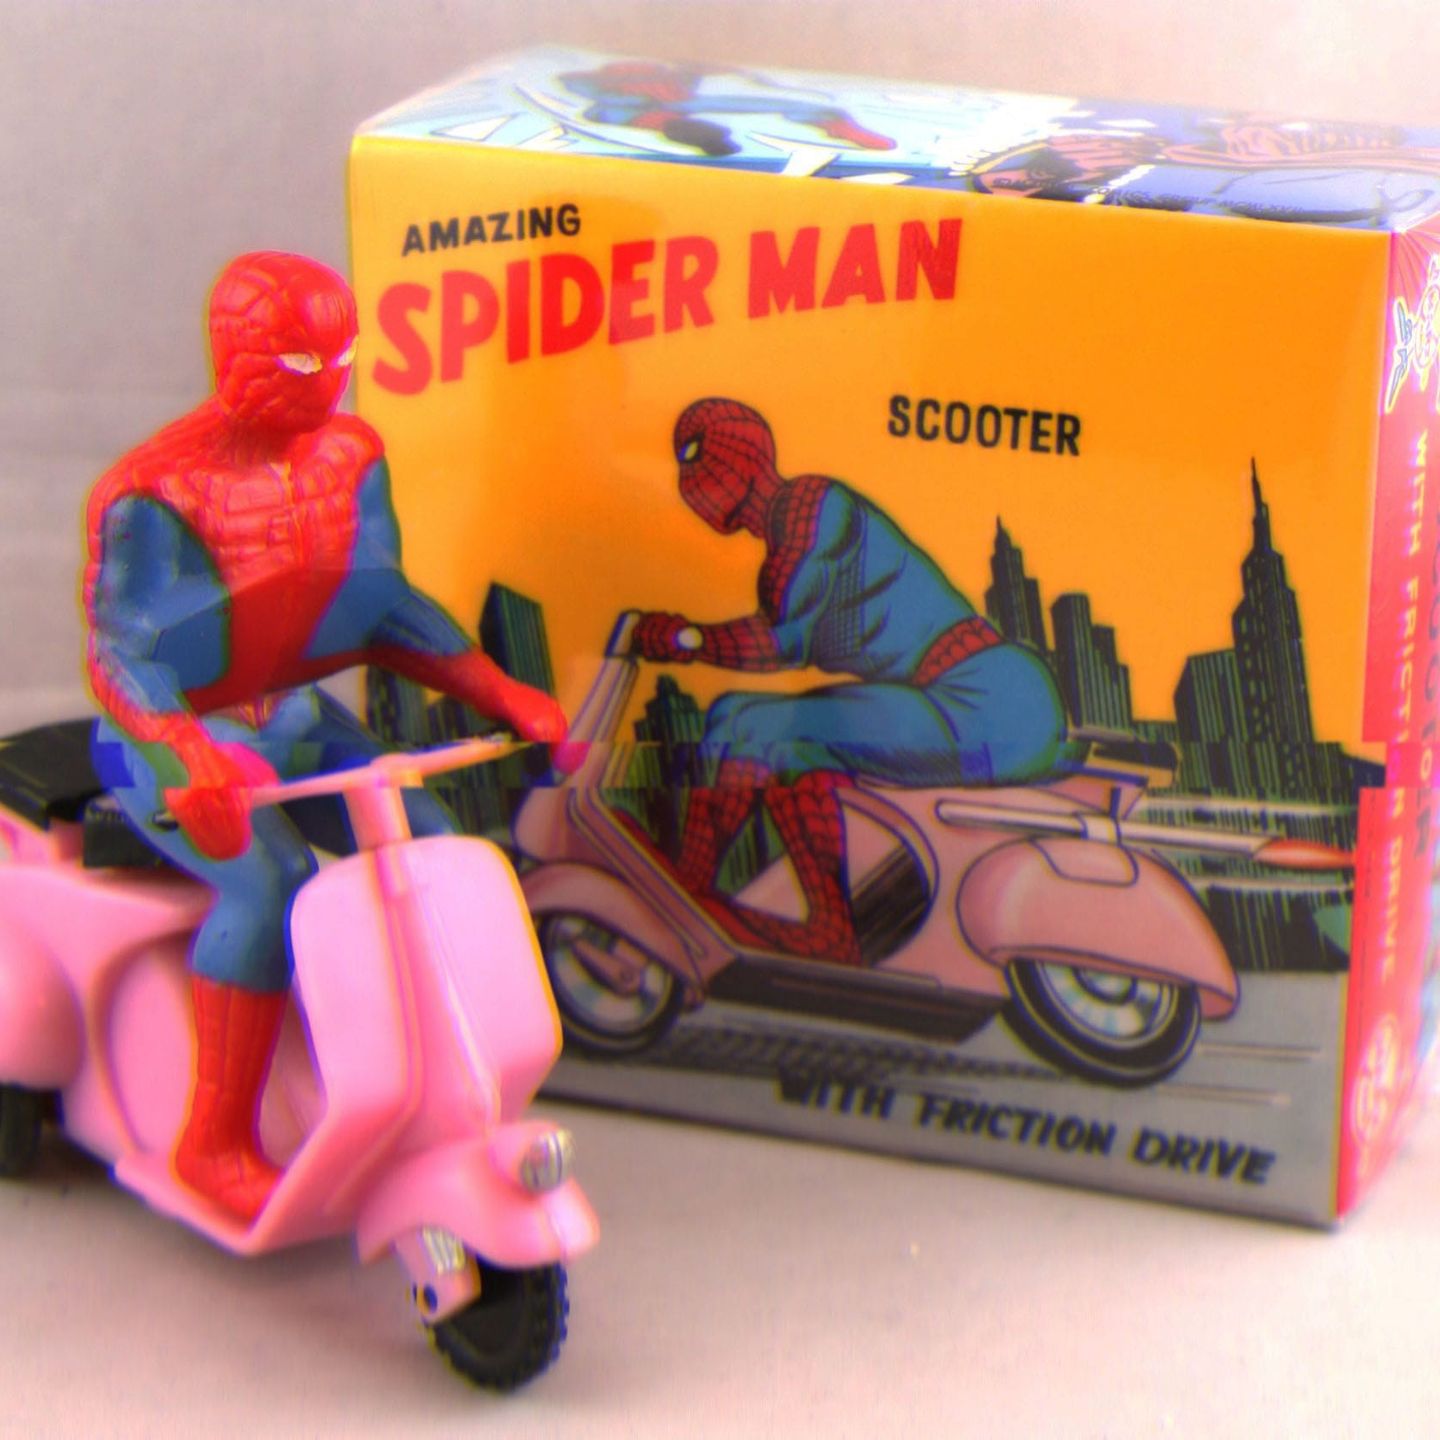 Адвокат из Лос-Анджелеса продаёт коллекцию Человека-паука, чтобы обеспечить семью